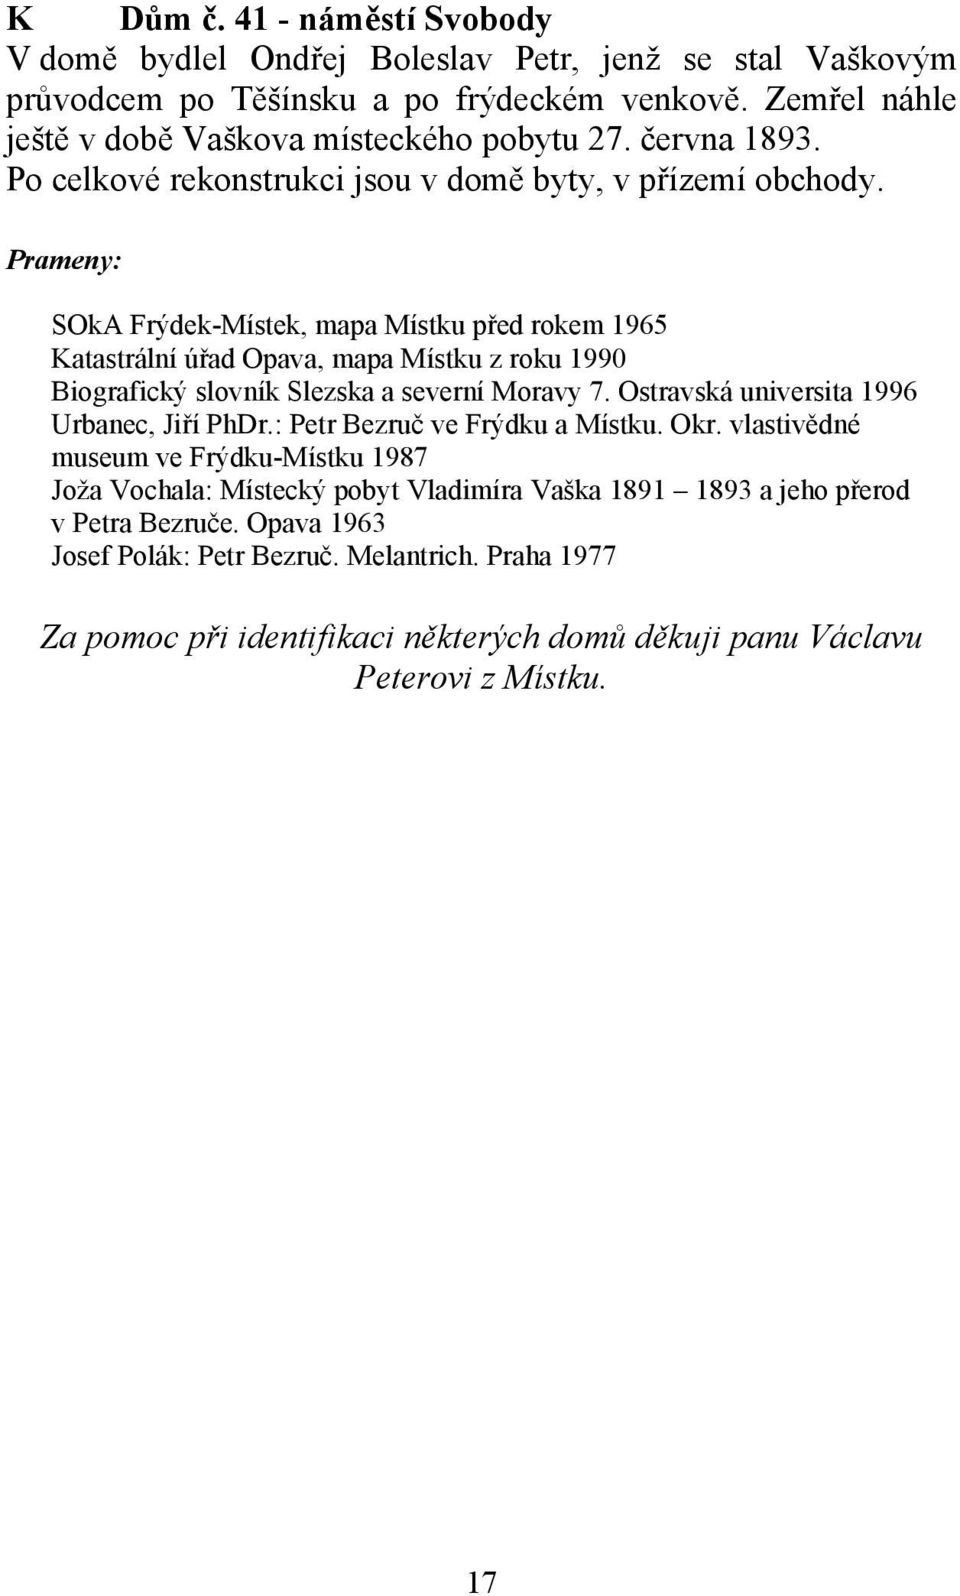 Prameny: SOkA Frýdek-Místek, mapa Místku před rokem 1965 Katastrální úřad Opava, mapa Místku z roku 1990 Biografický slovník Slezska a severní Moravy 7.